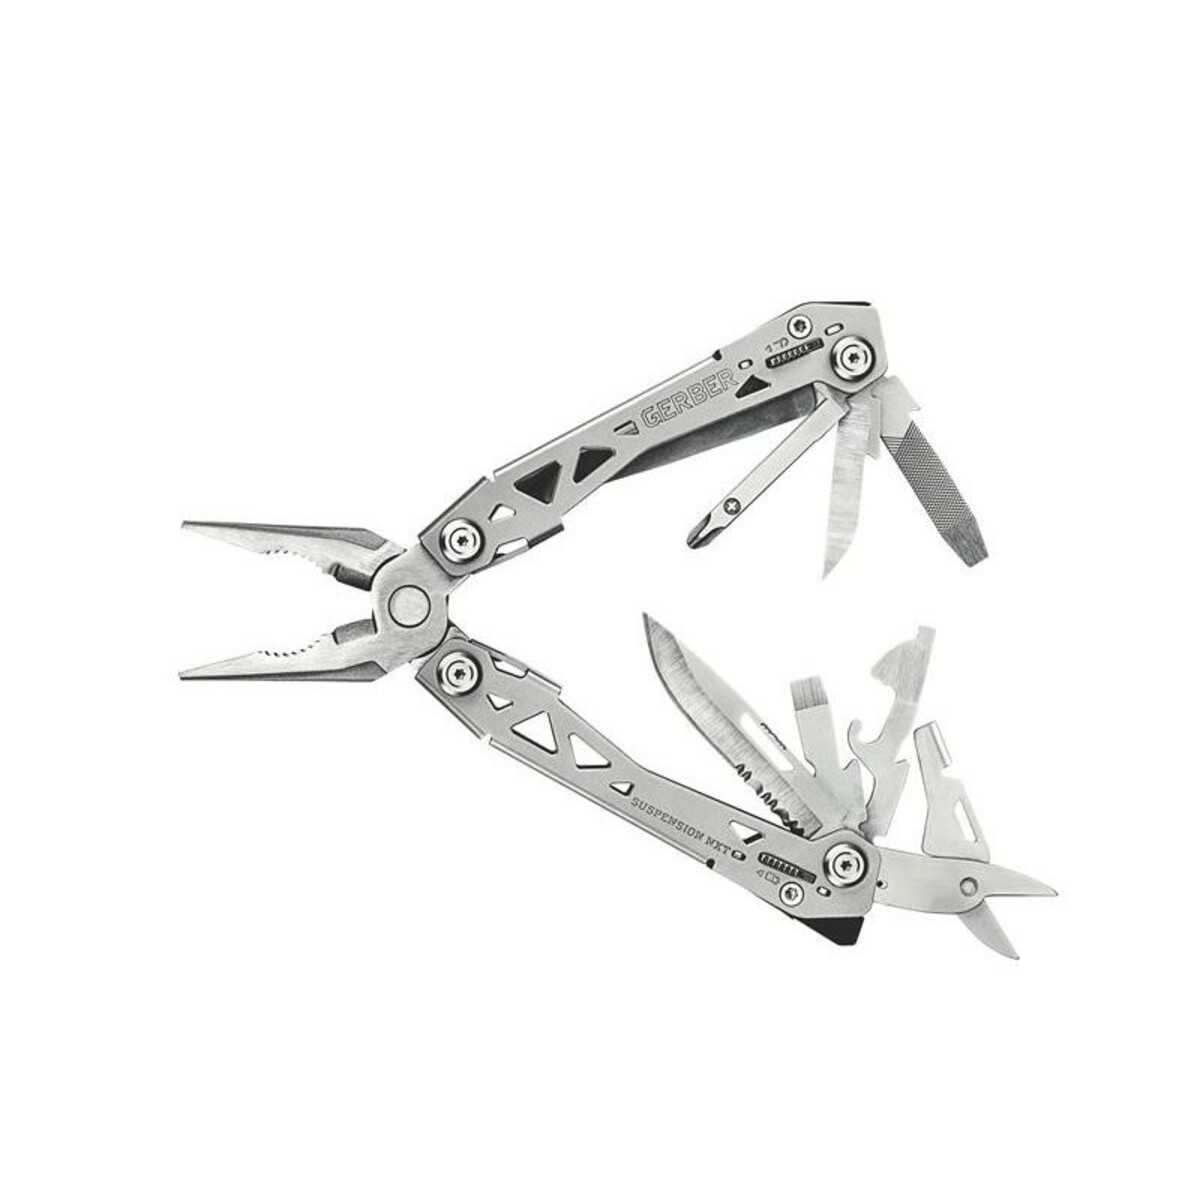 Gerber Suspension Multi-Tool NXT - 15 outils, avec clip ceinture/sans étui